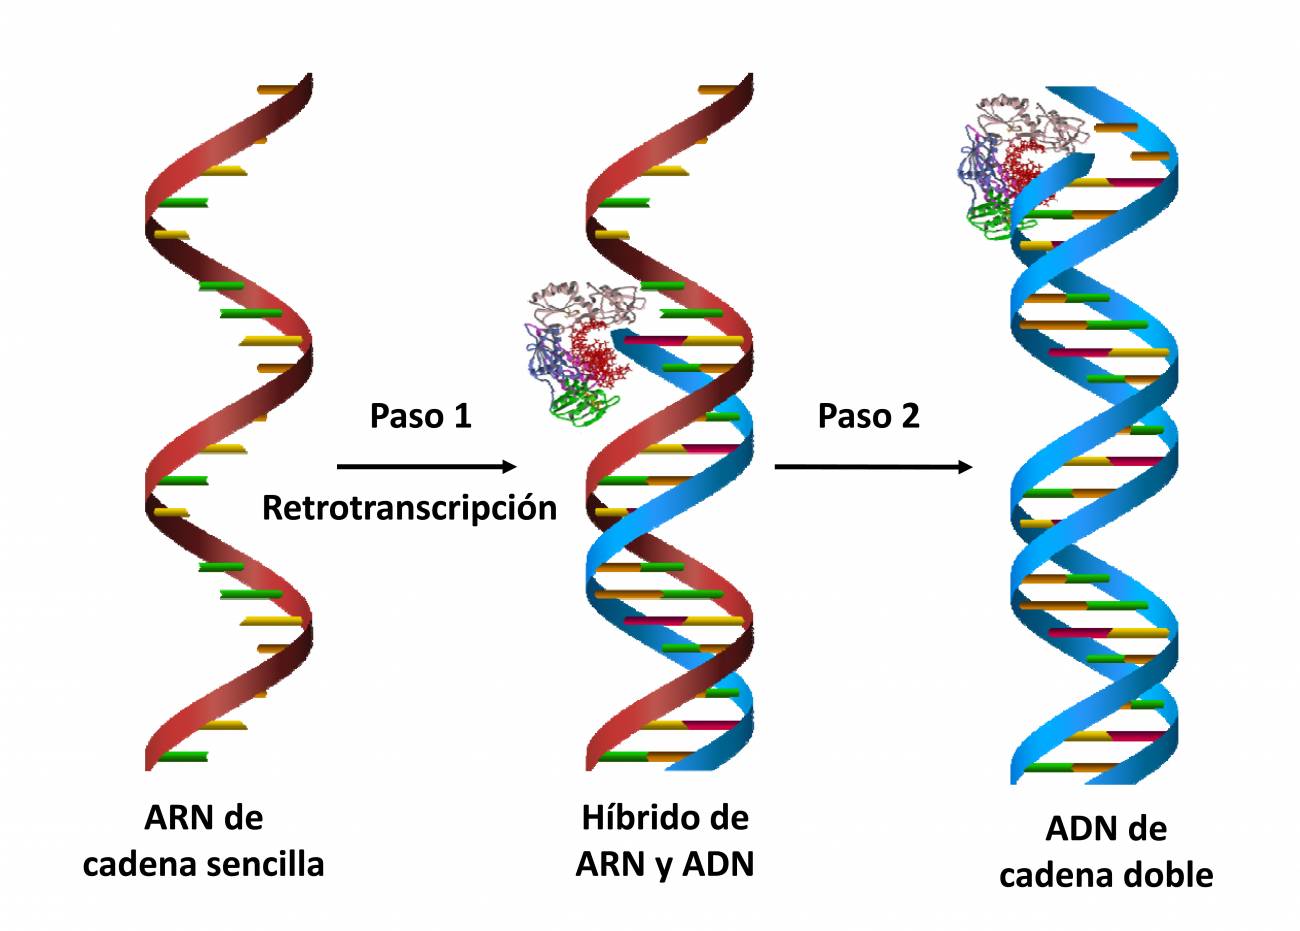 Gráfica que representa cómo la retrotranscripción permite pasar de ARN de cadena sencilla a ADN de cadena doble, en dos pasos.